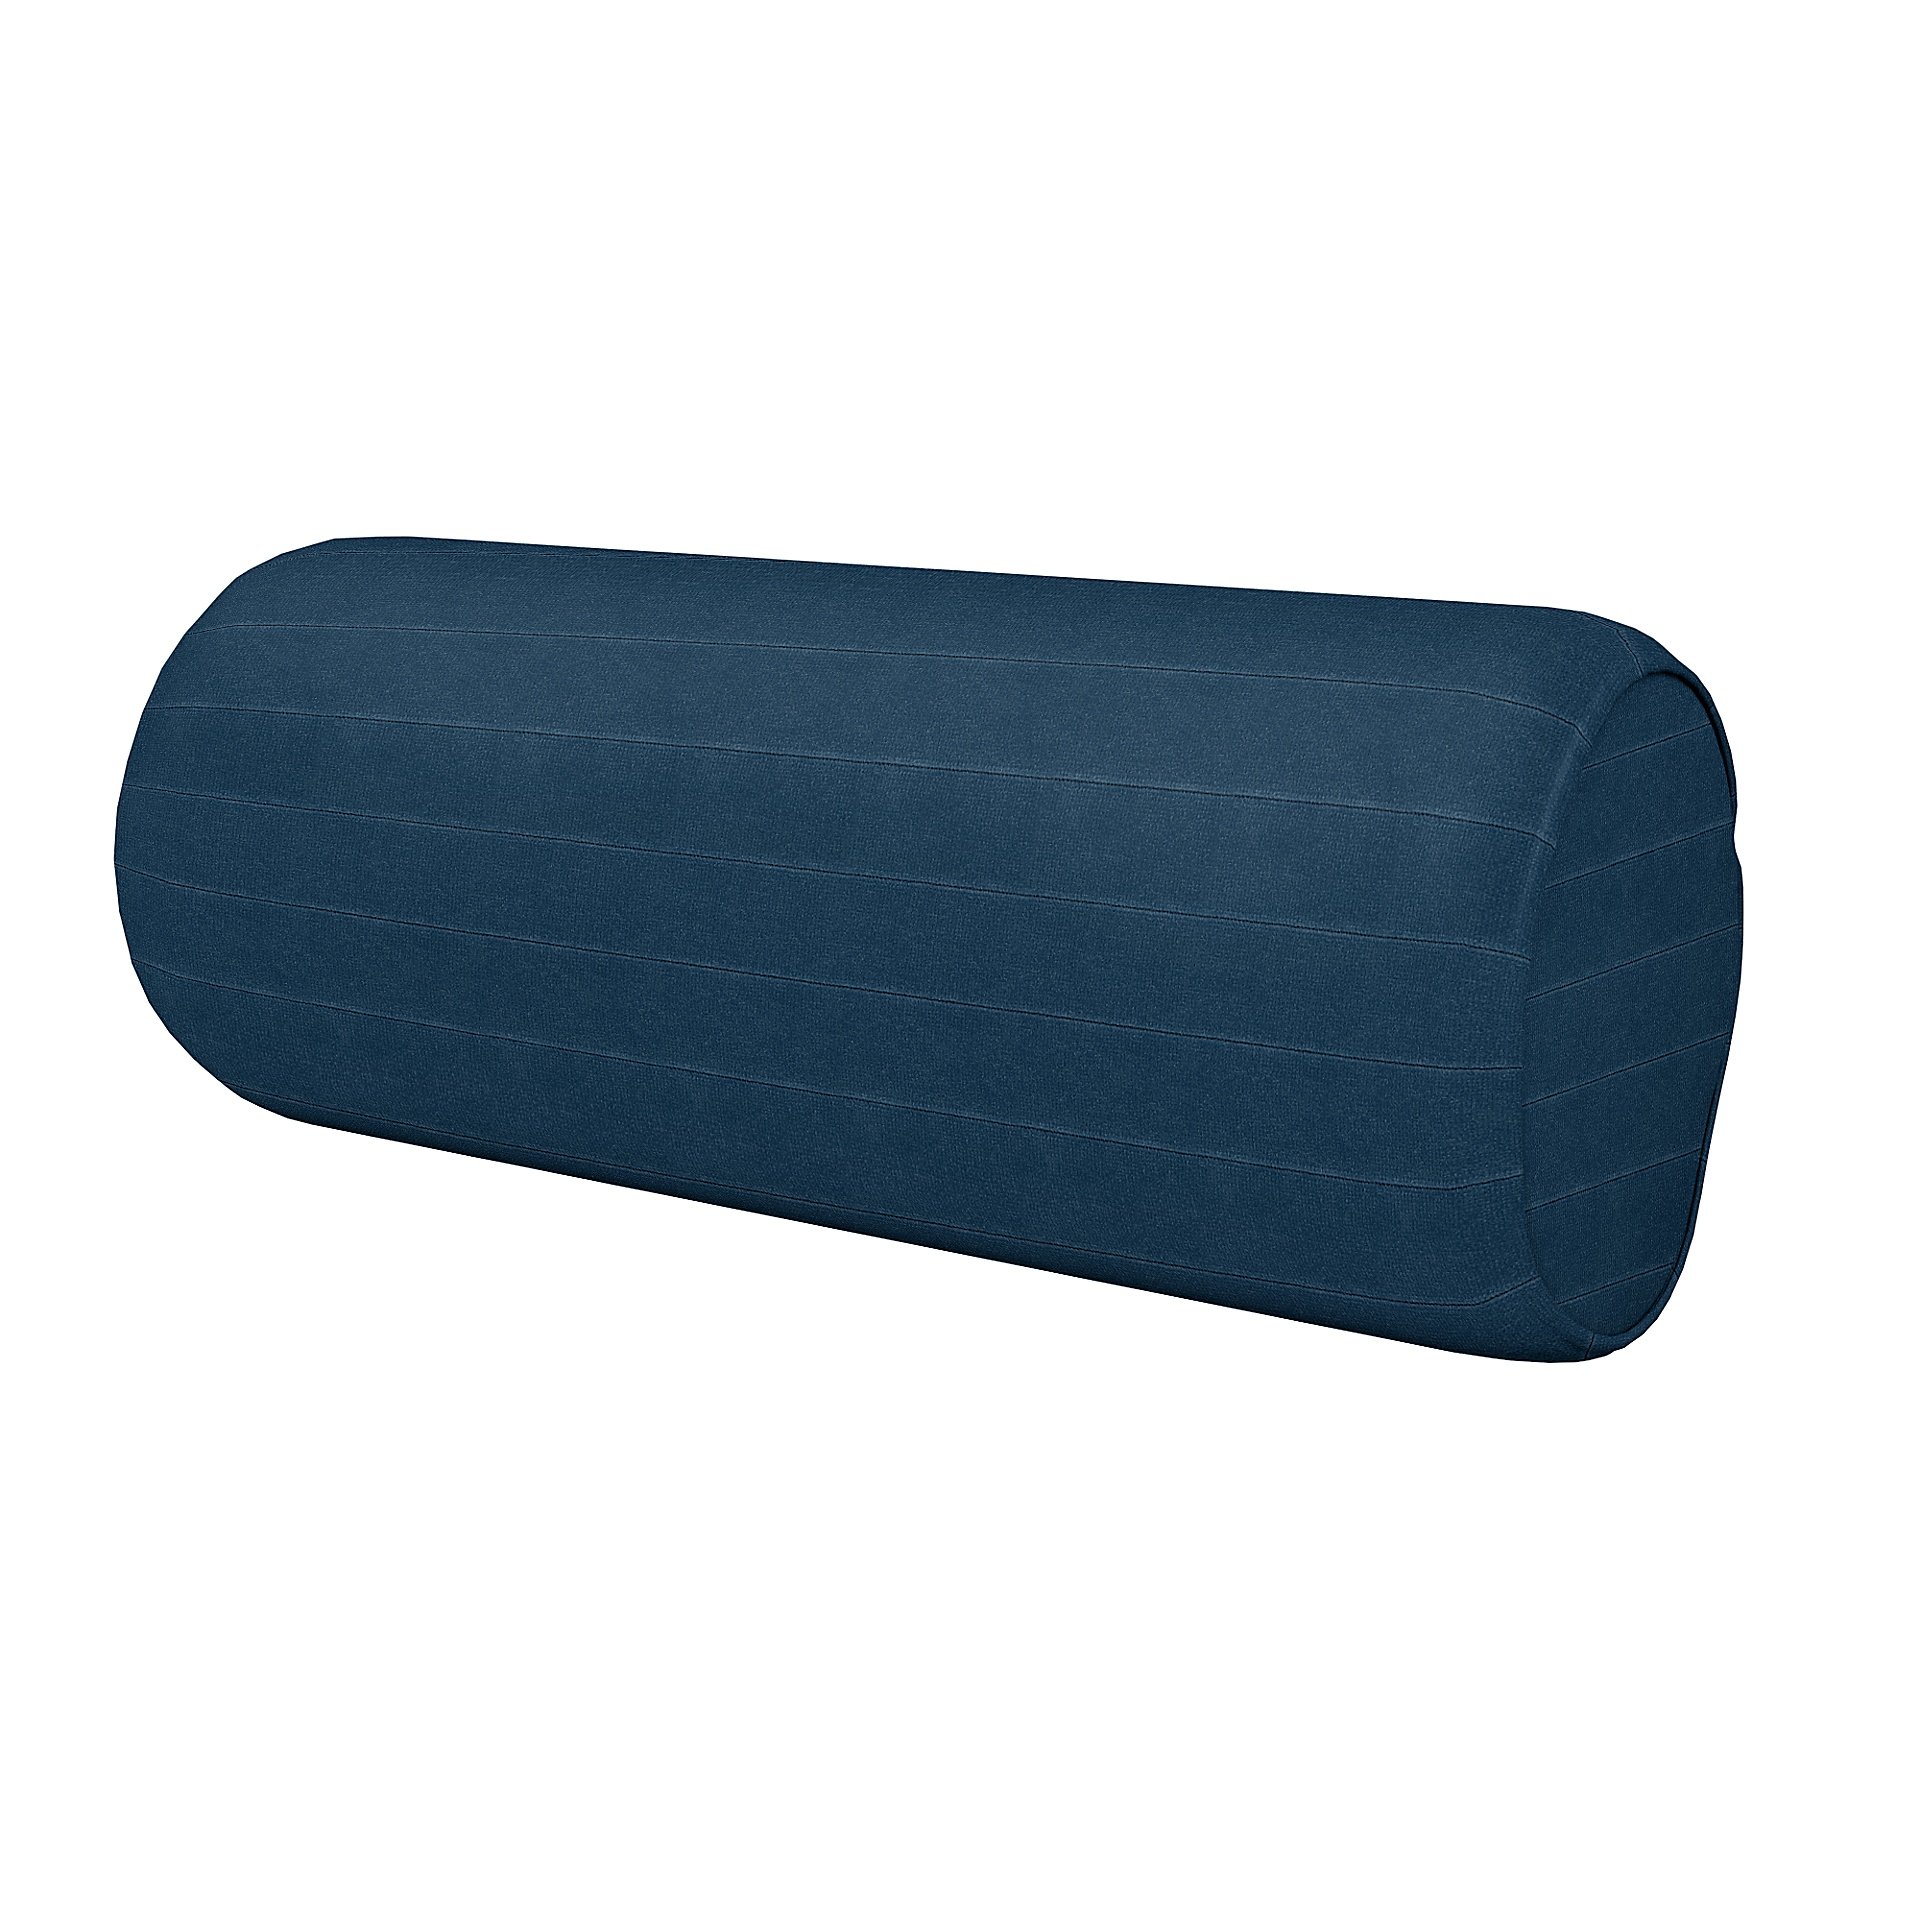 IKEA - Cushion Cover Ektorp Roll , Denim Blue, Velvet - Bemz